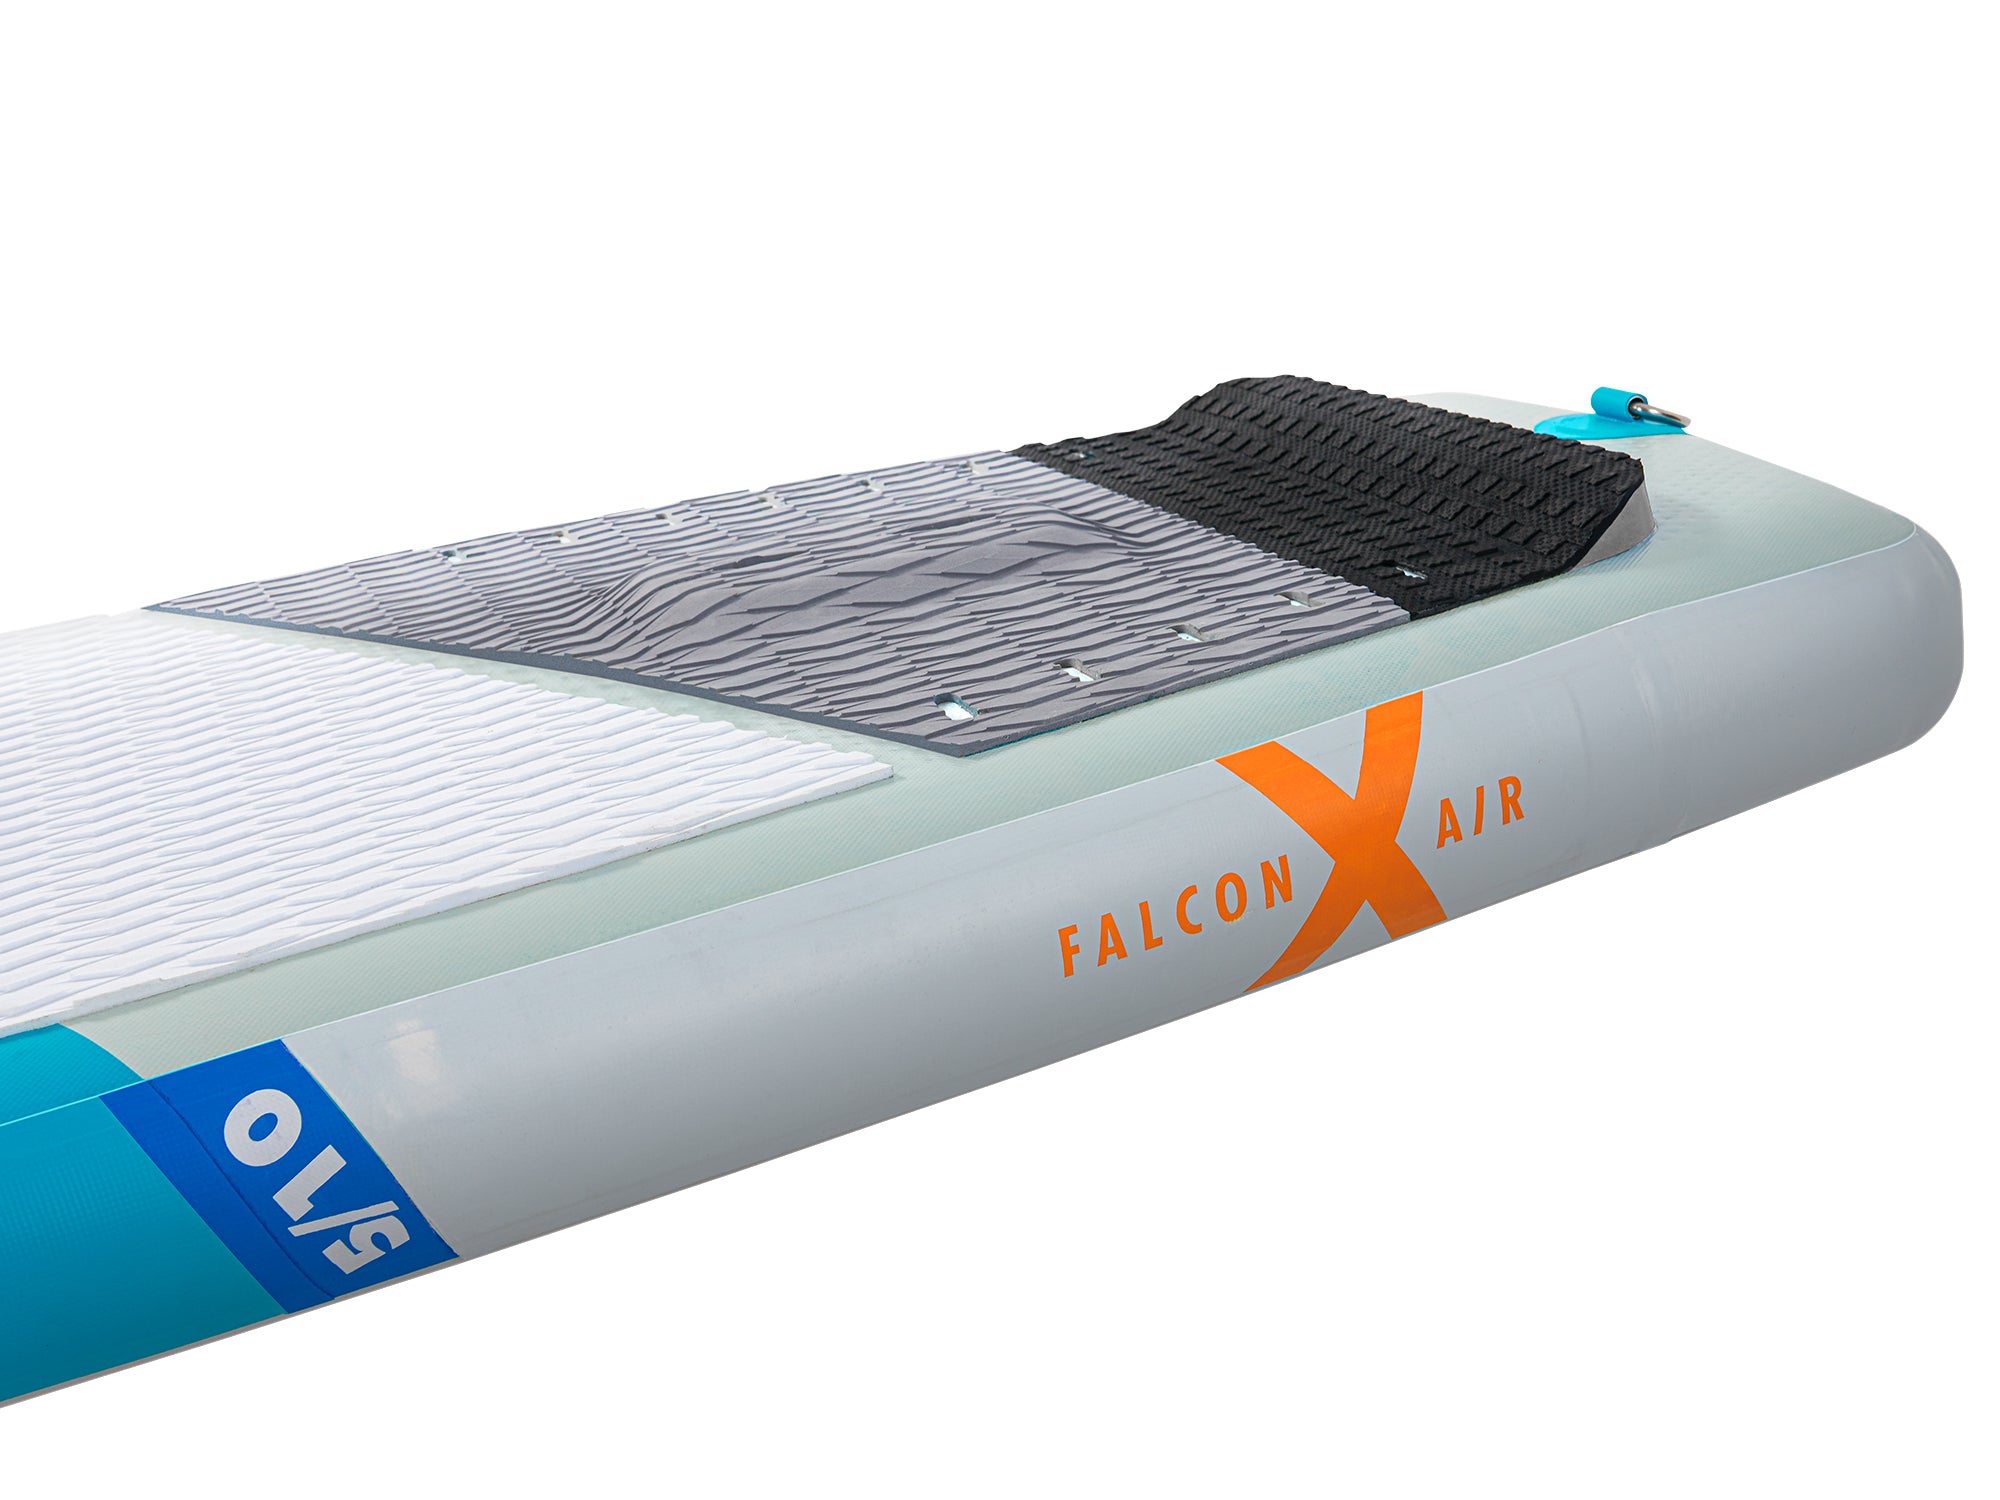 Aztron FALCON AIR X Foil SUP 5'10" 135L